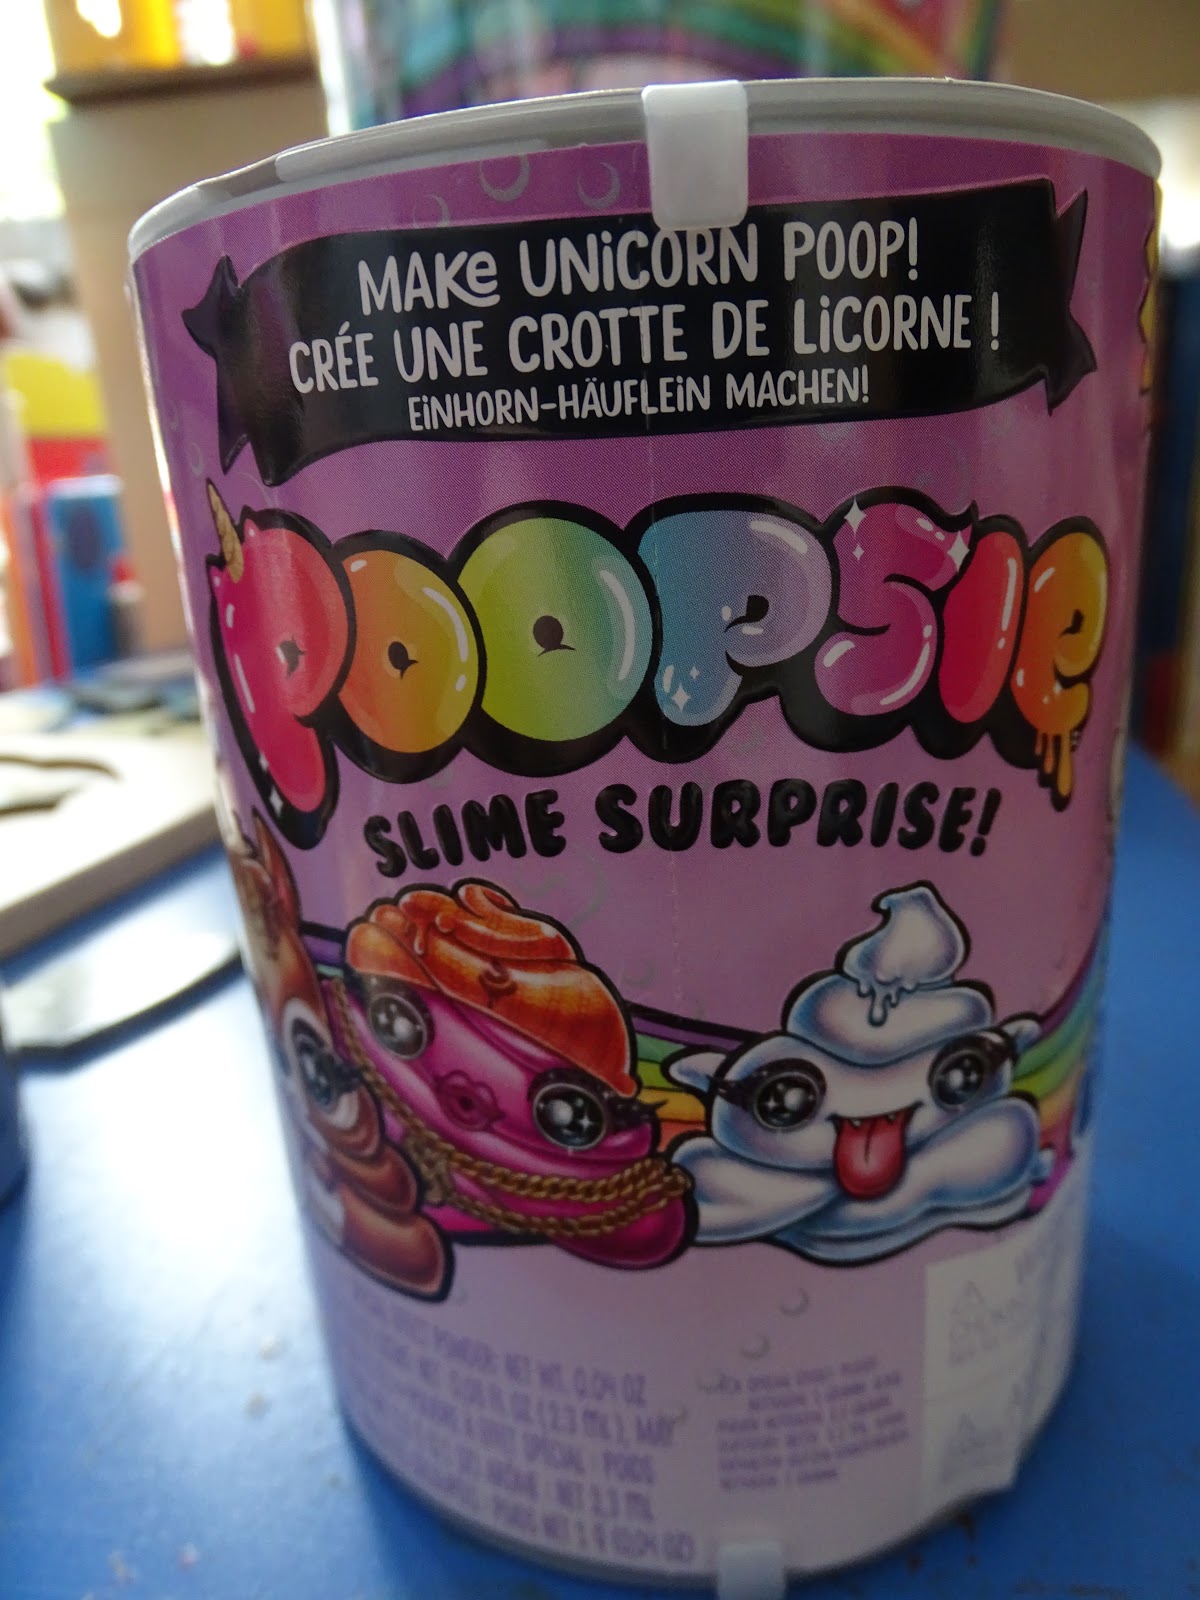 Poopsie Slime Surprise Unicorn Poop Review